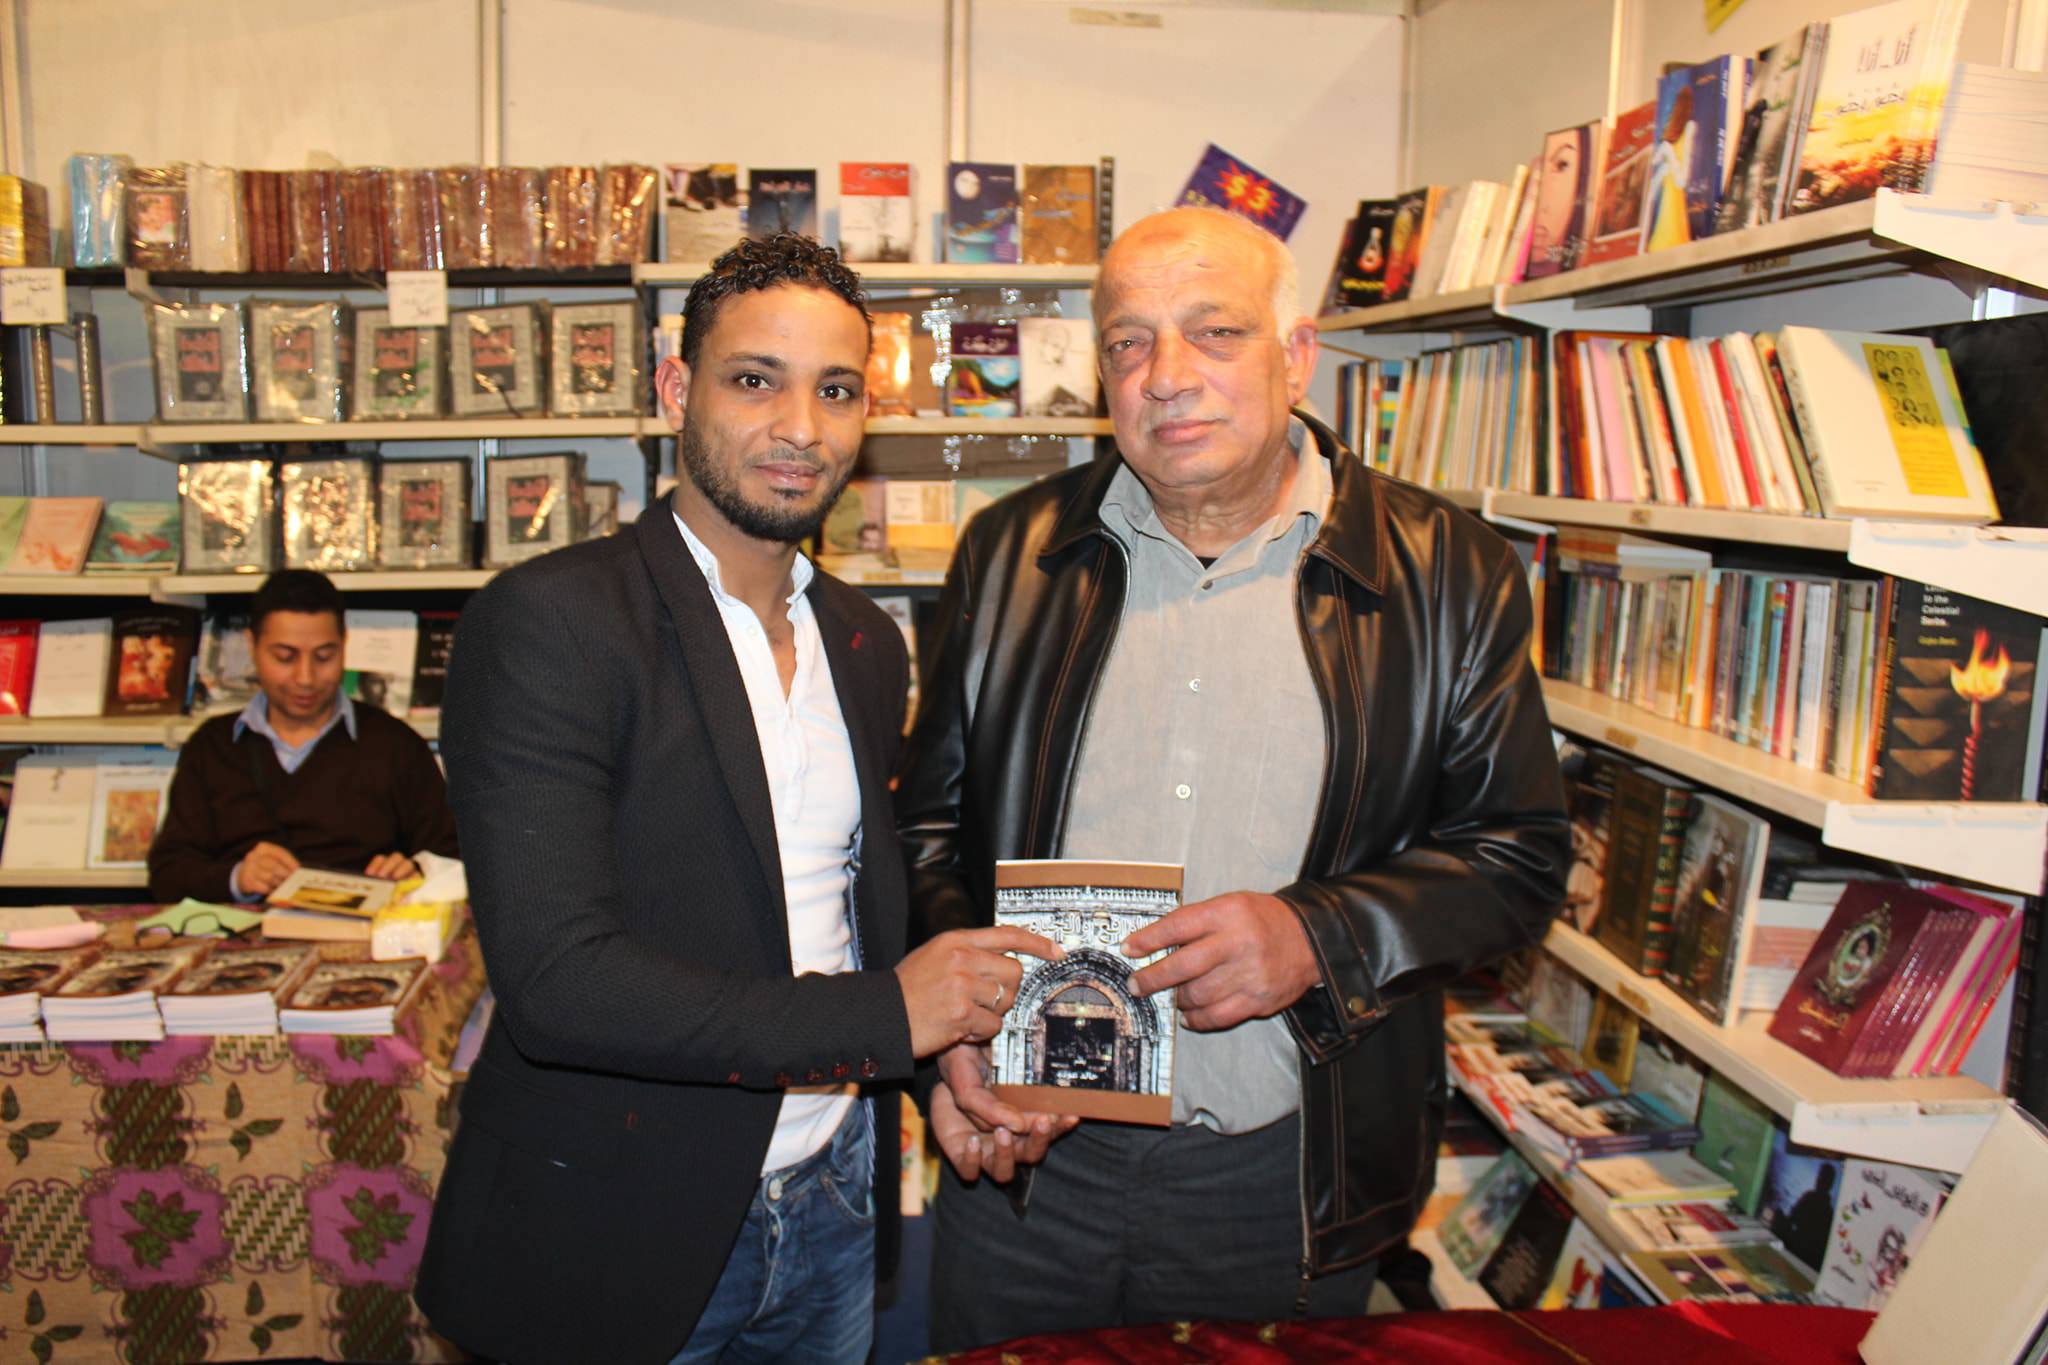 توقيع كتاب جديد للكاتب خالد عودة في معرض طرابلس الدولي